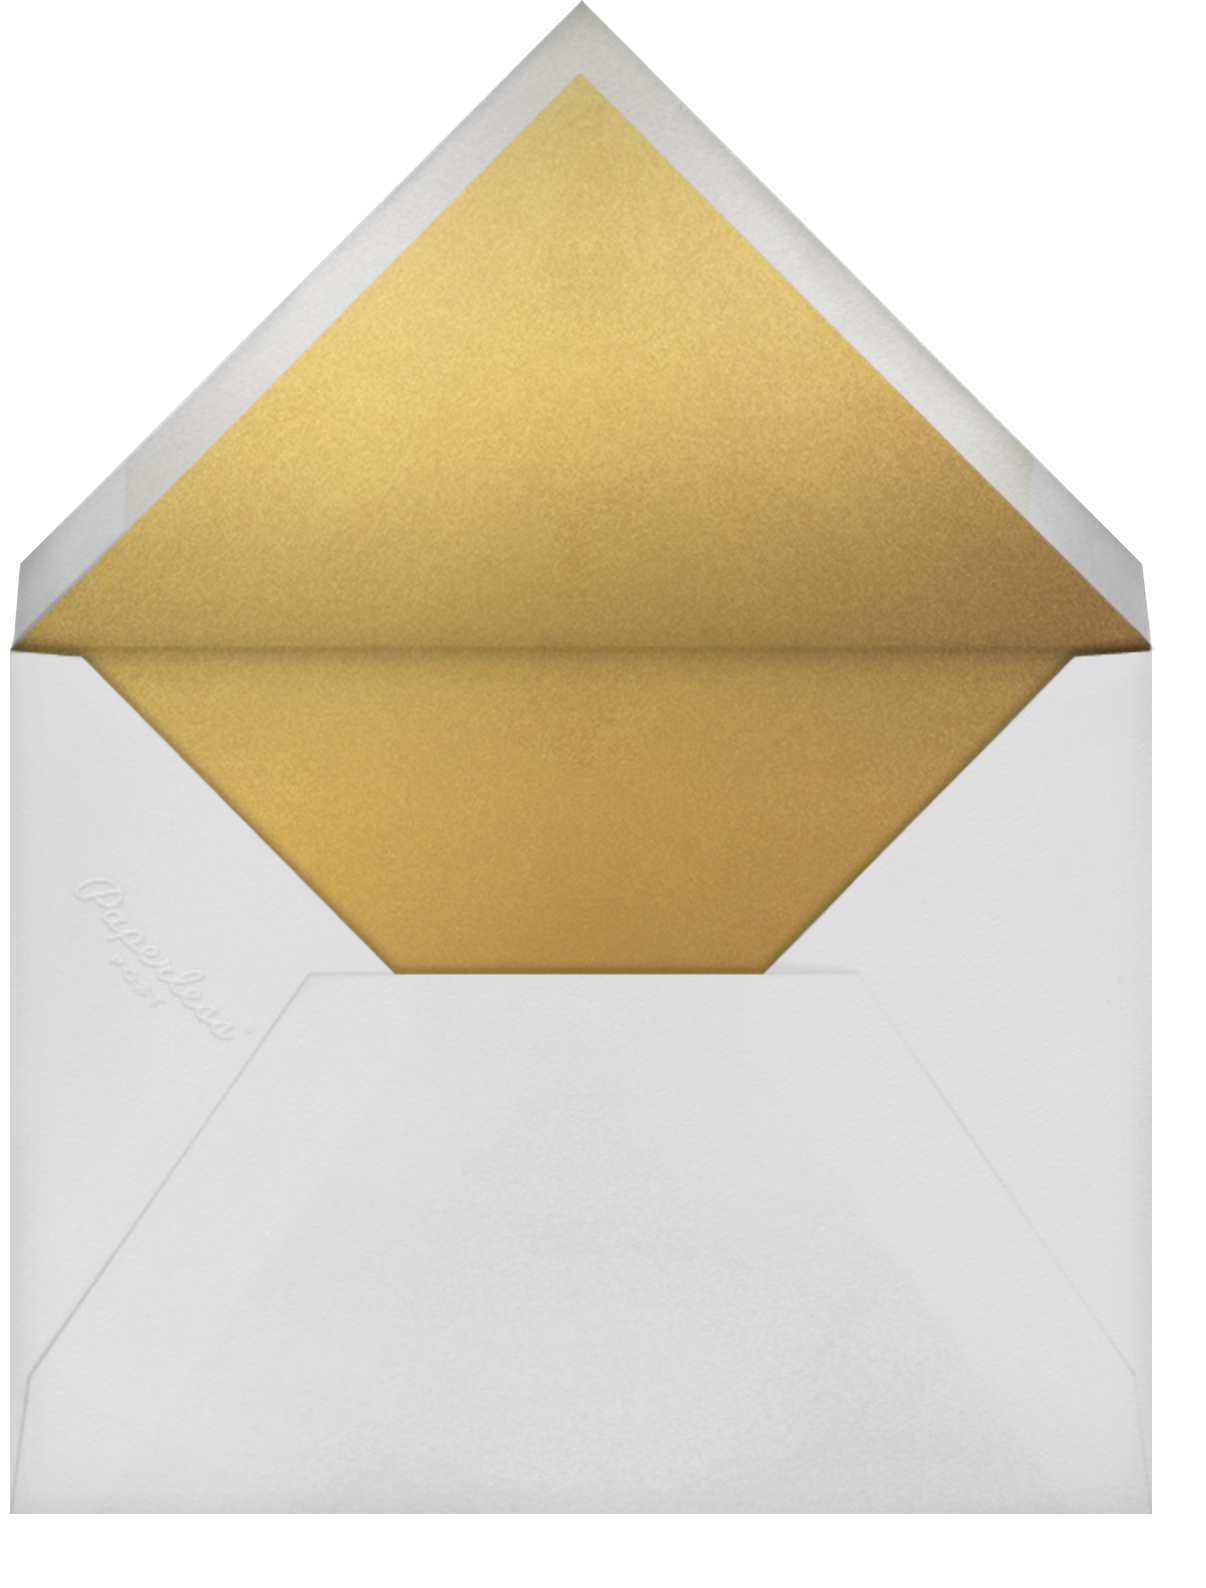 Pressed in Vellum - Paperless Post - Envelope